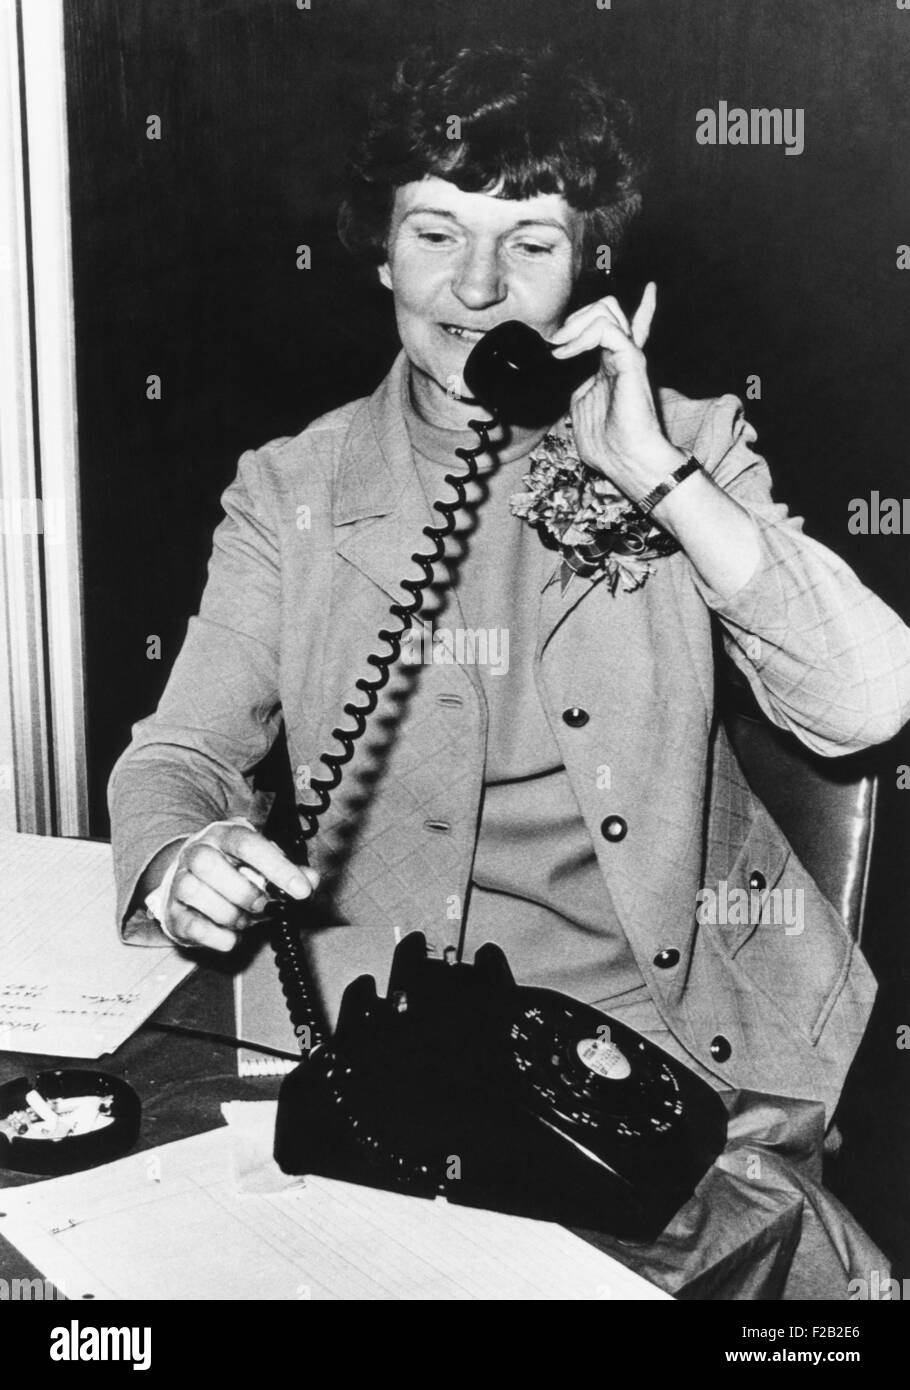 Geduld Sewell Latting war der erste weibliche Bürgermeister von Oklahoma City, von 1971 bis 1983. Als Bürgermeister unterstützte sie die Stadterneuerung von Oklahoma City. Im Jahr 1967 war Latting die erste Frau in der Oklahoma City Council gewählt. (CSU 2015 7 378) Stockfoto